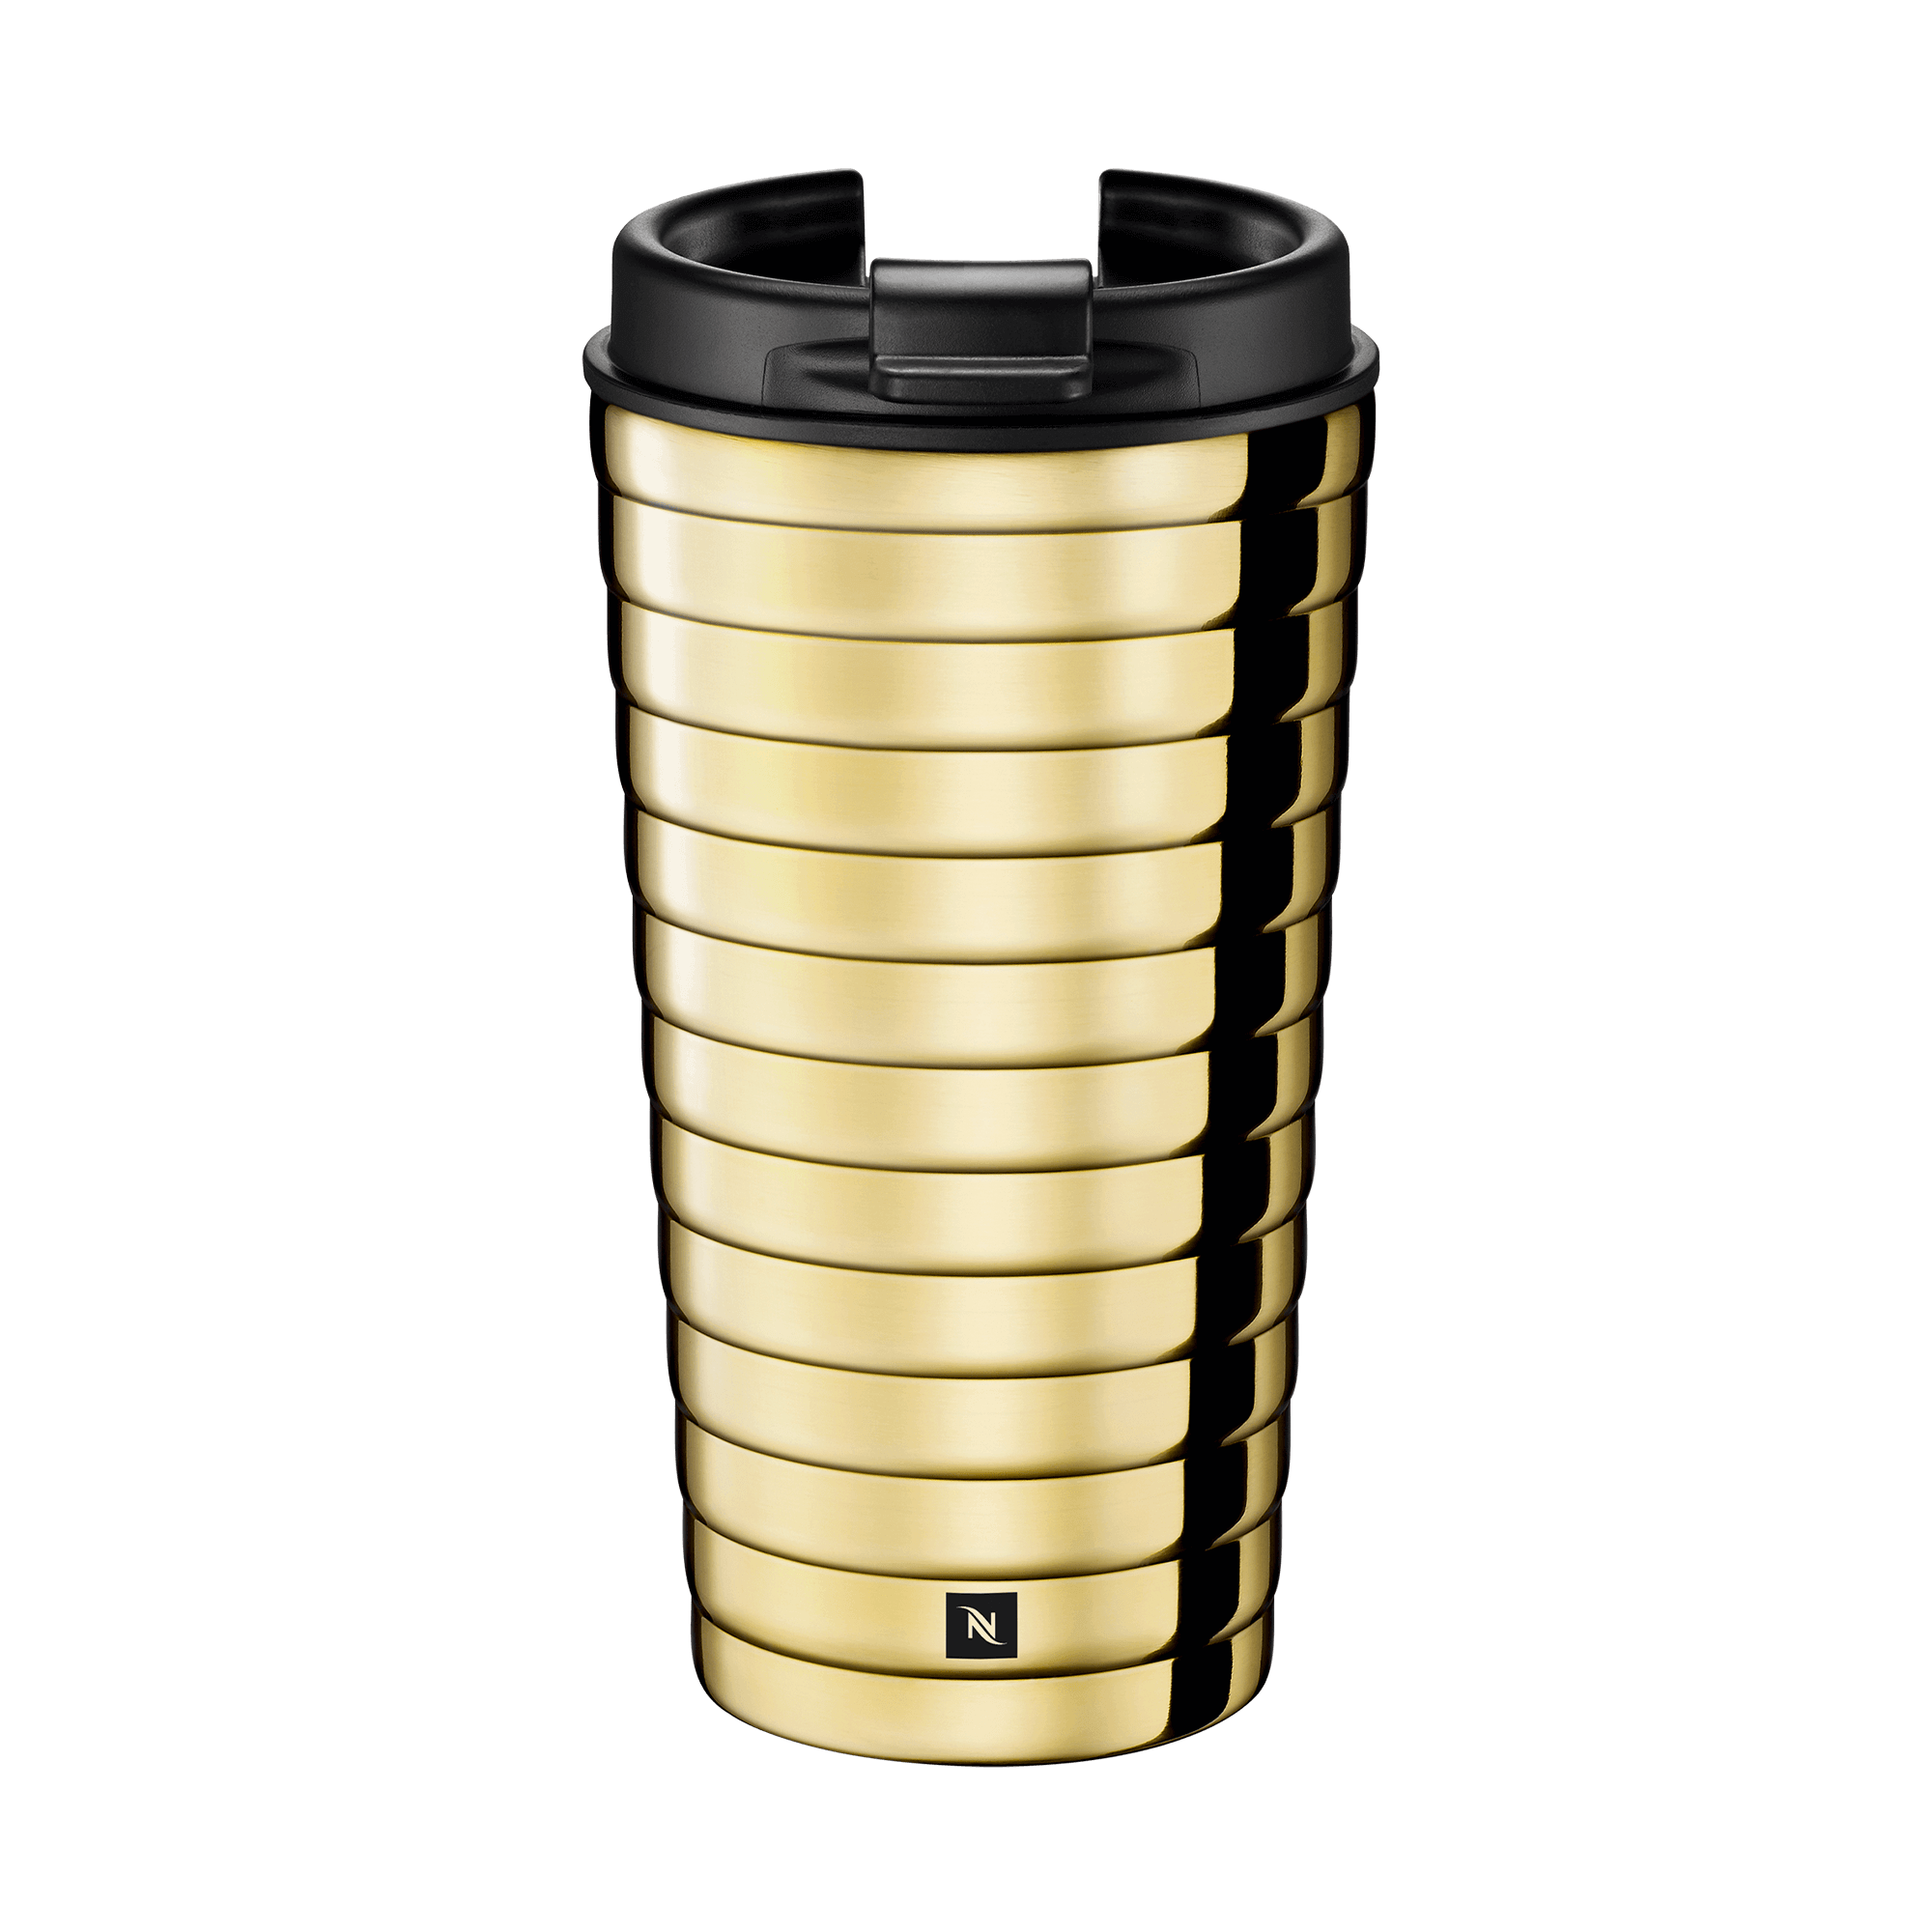 Nespresso - Nomad Travel Mug te acompaña siempre, manteniendo la  temperatura de tu café justo como a ti te gusta☕. Puedes encontrarlo en 3  tamaños y colores diferentes. Un accesorio minimalista, moderno